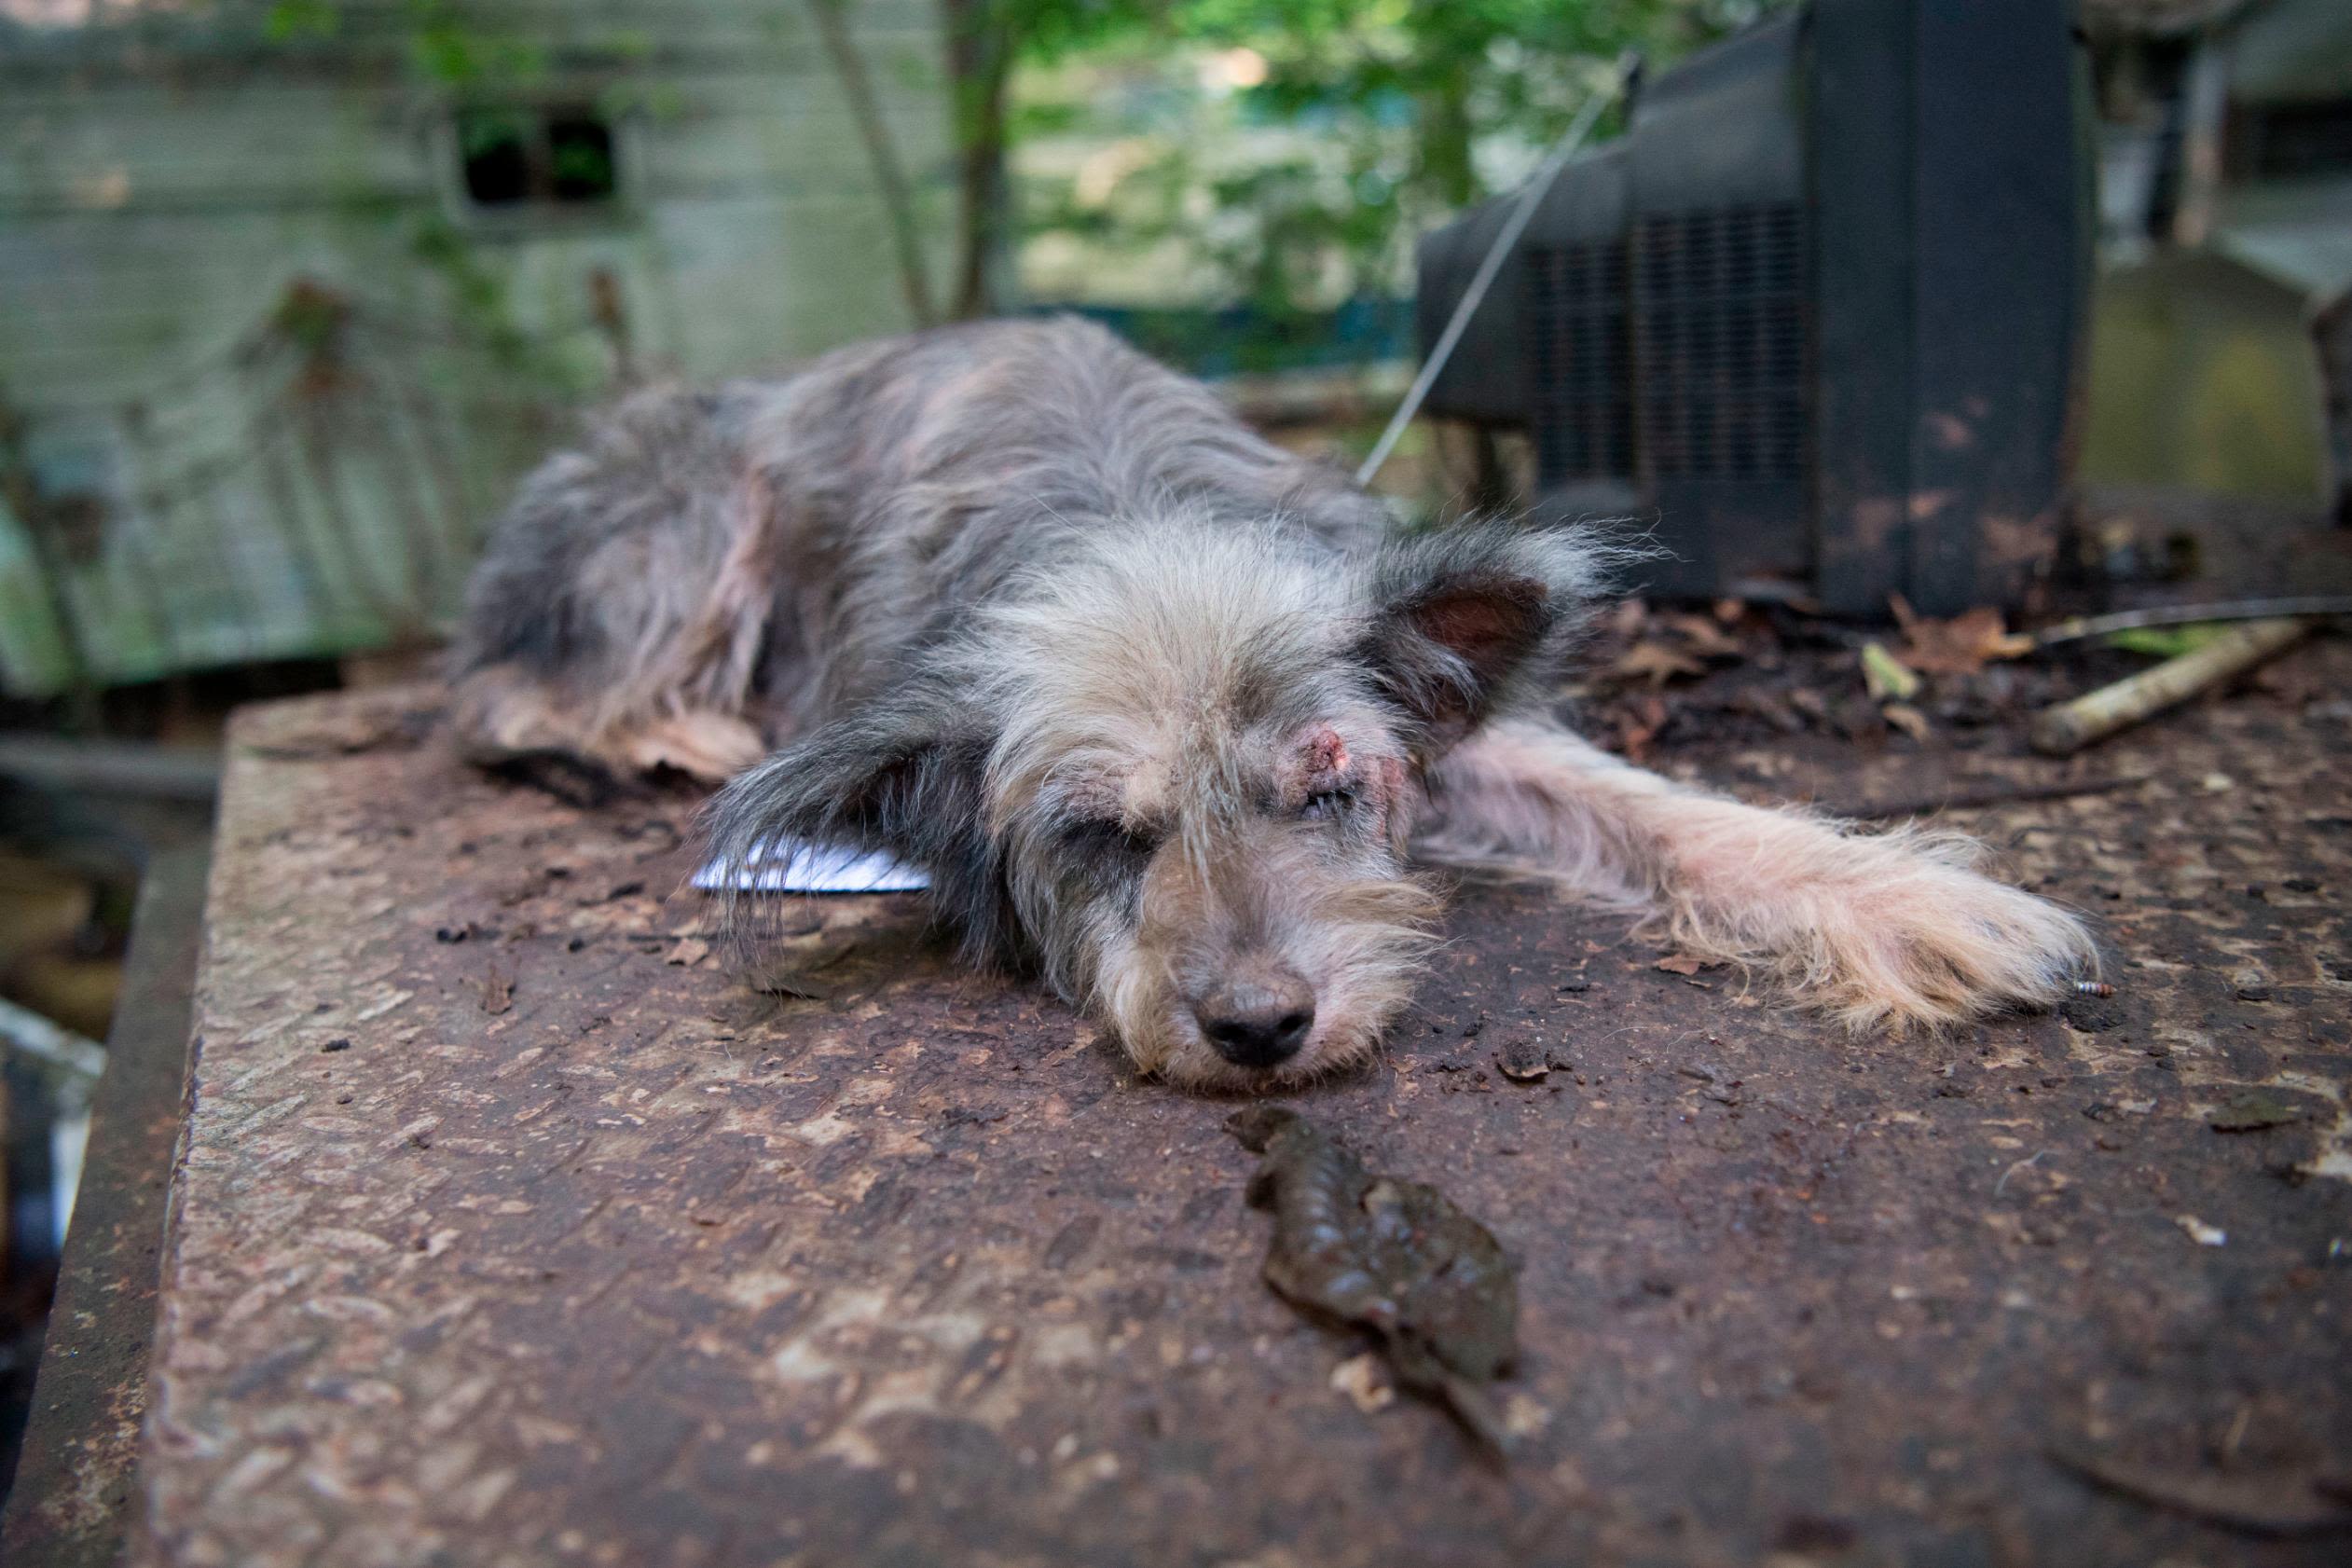 A proposed bill will make animal cruelty a federal felony | CNN